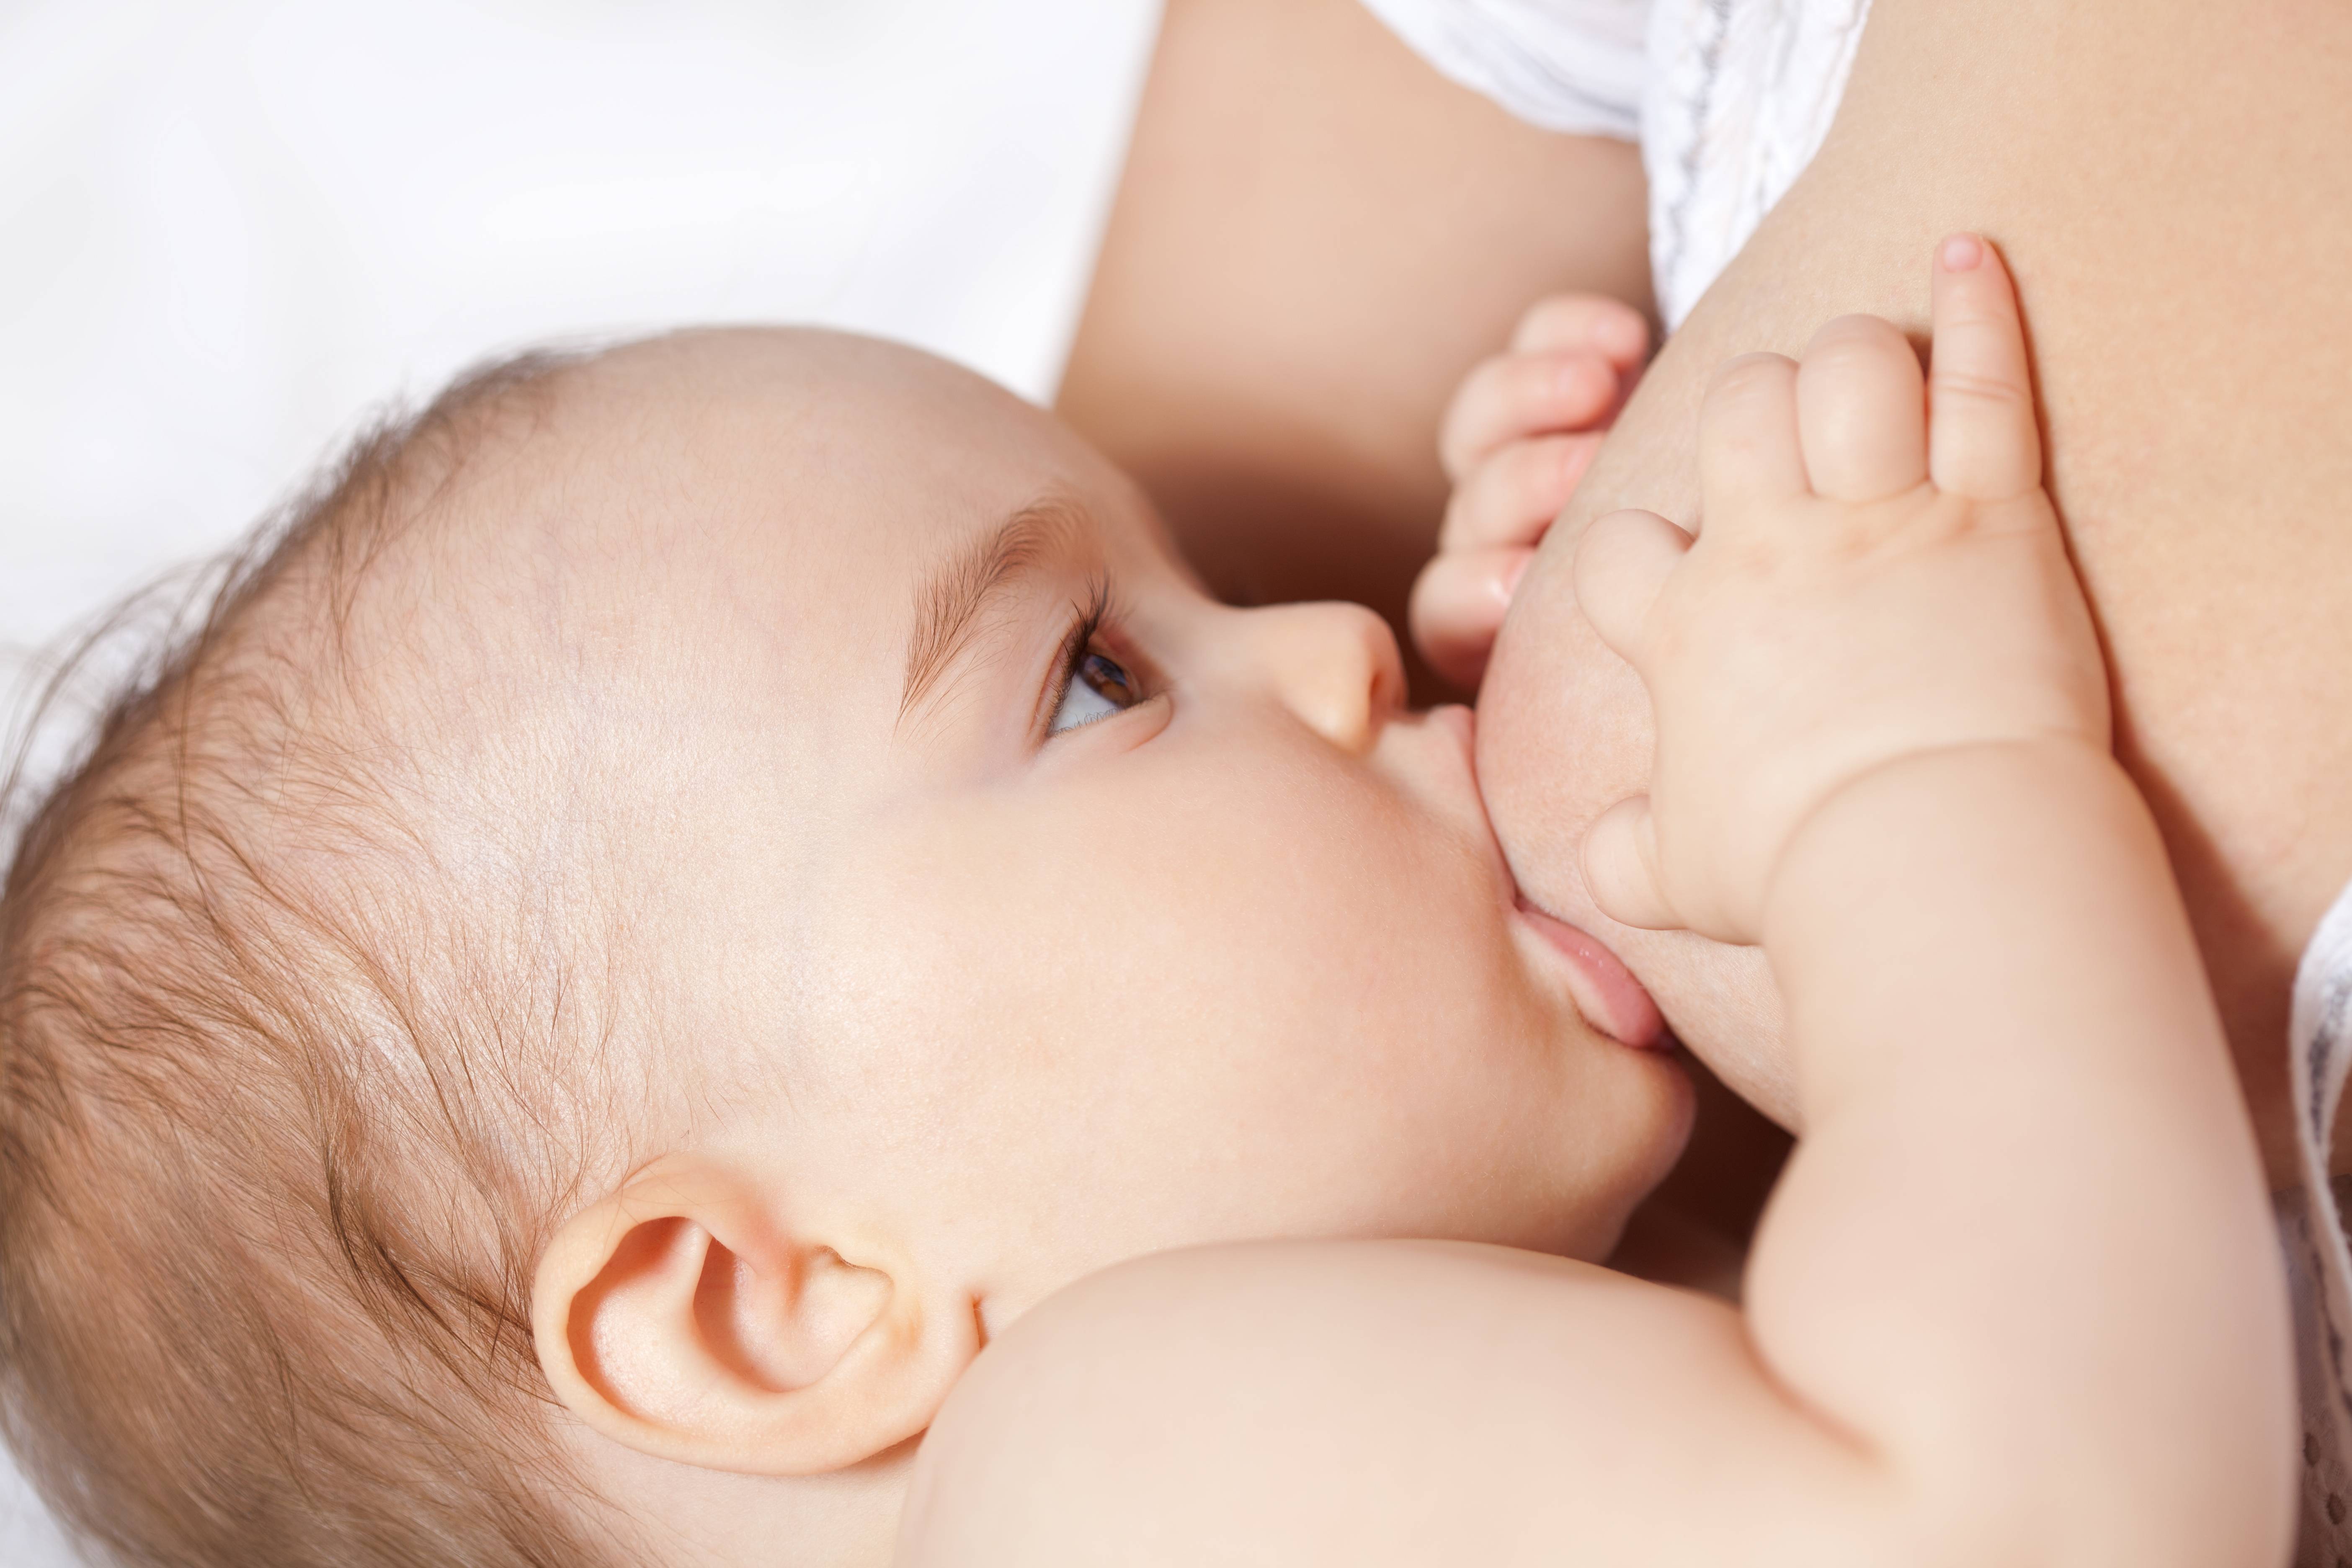 Ребенок кусает мамину грудь при кормлении - медицинская информация